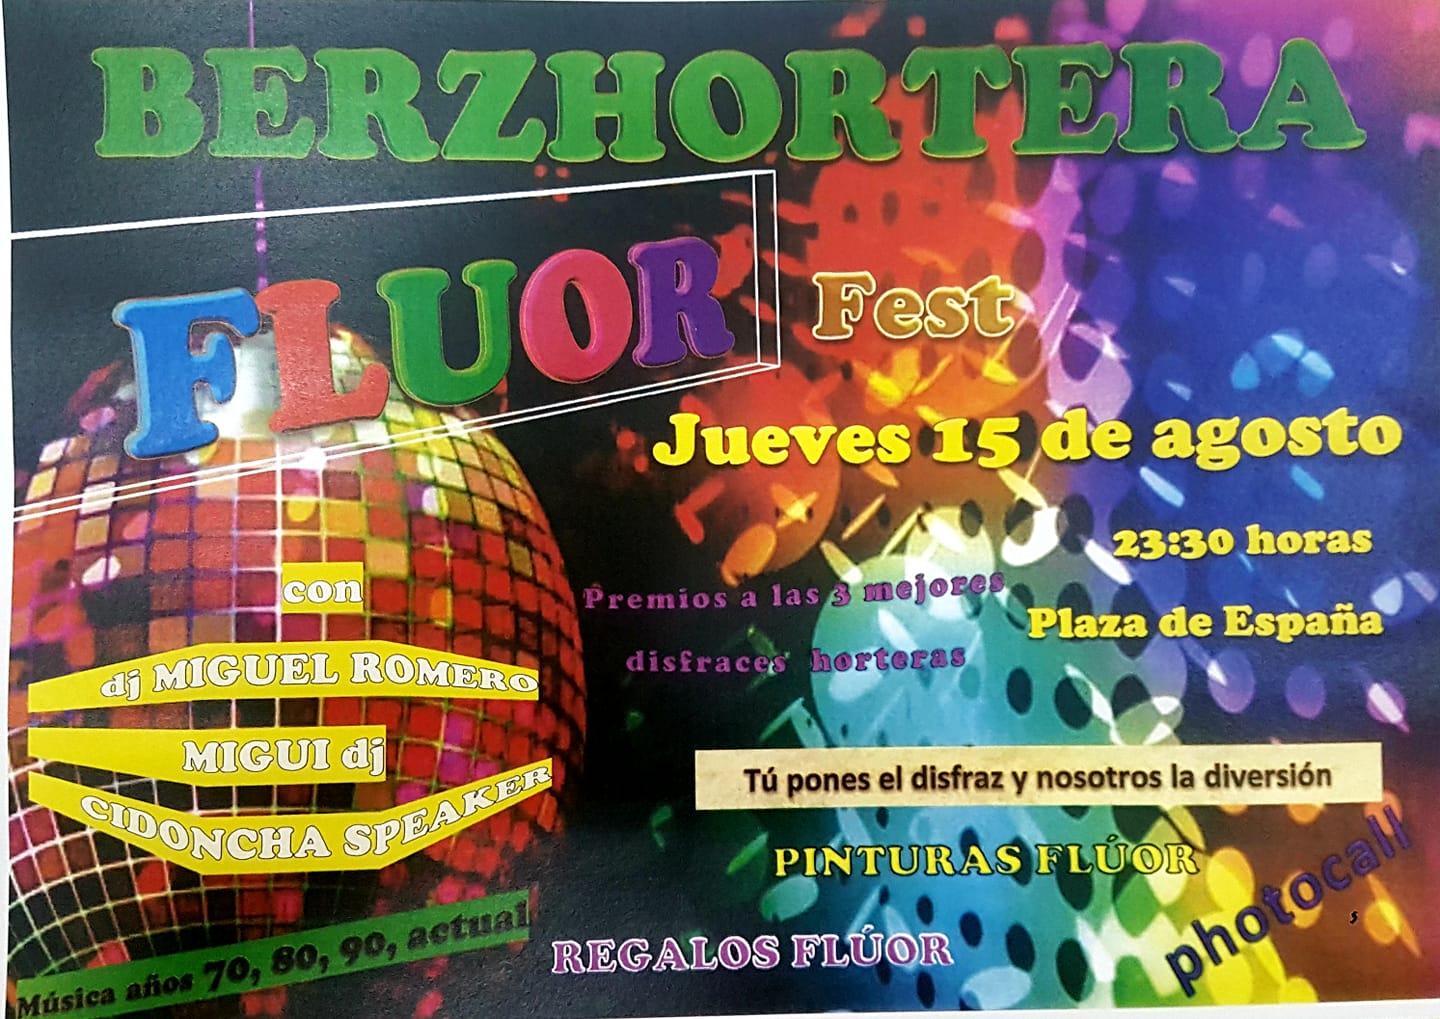 Berzhortera 2019 - Berzocana (Cáceres)